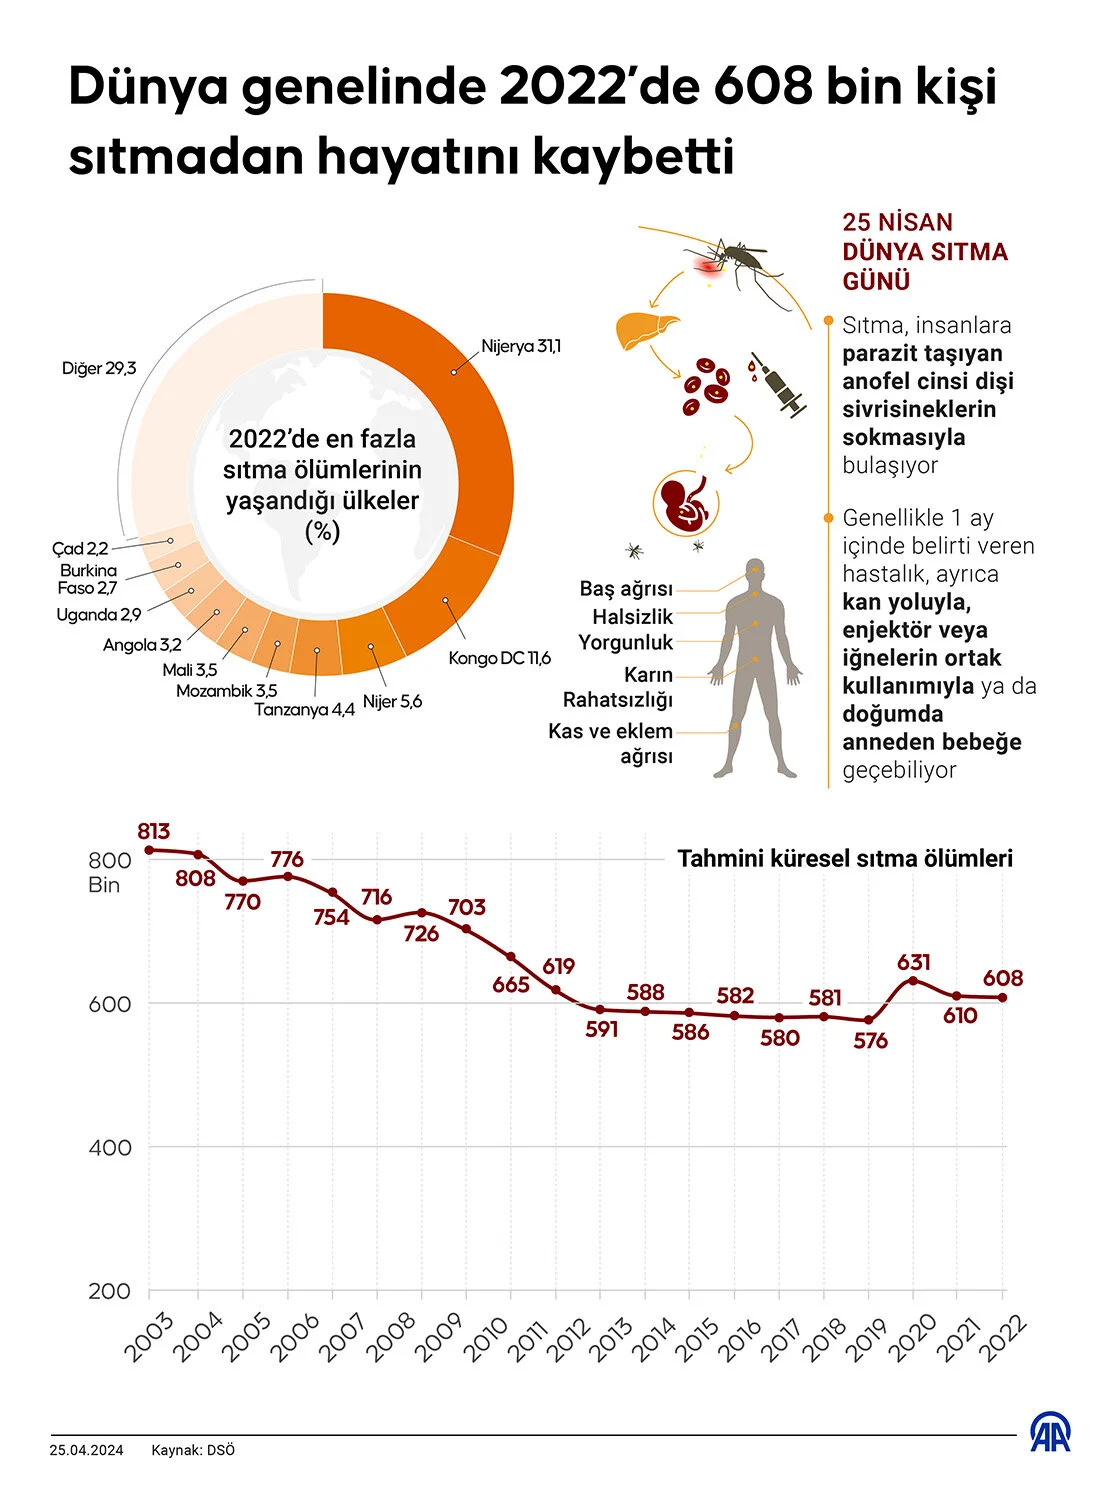 Dünya Genelinde 2022'De Sıtma Nedeniyle 608 Bin Kişi Öldü 2